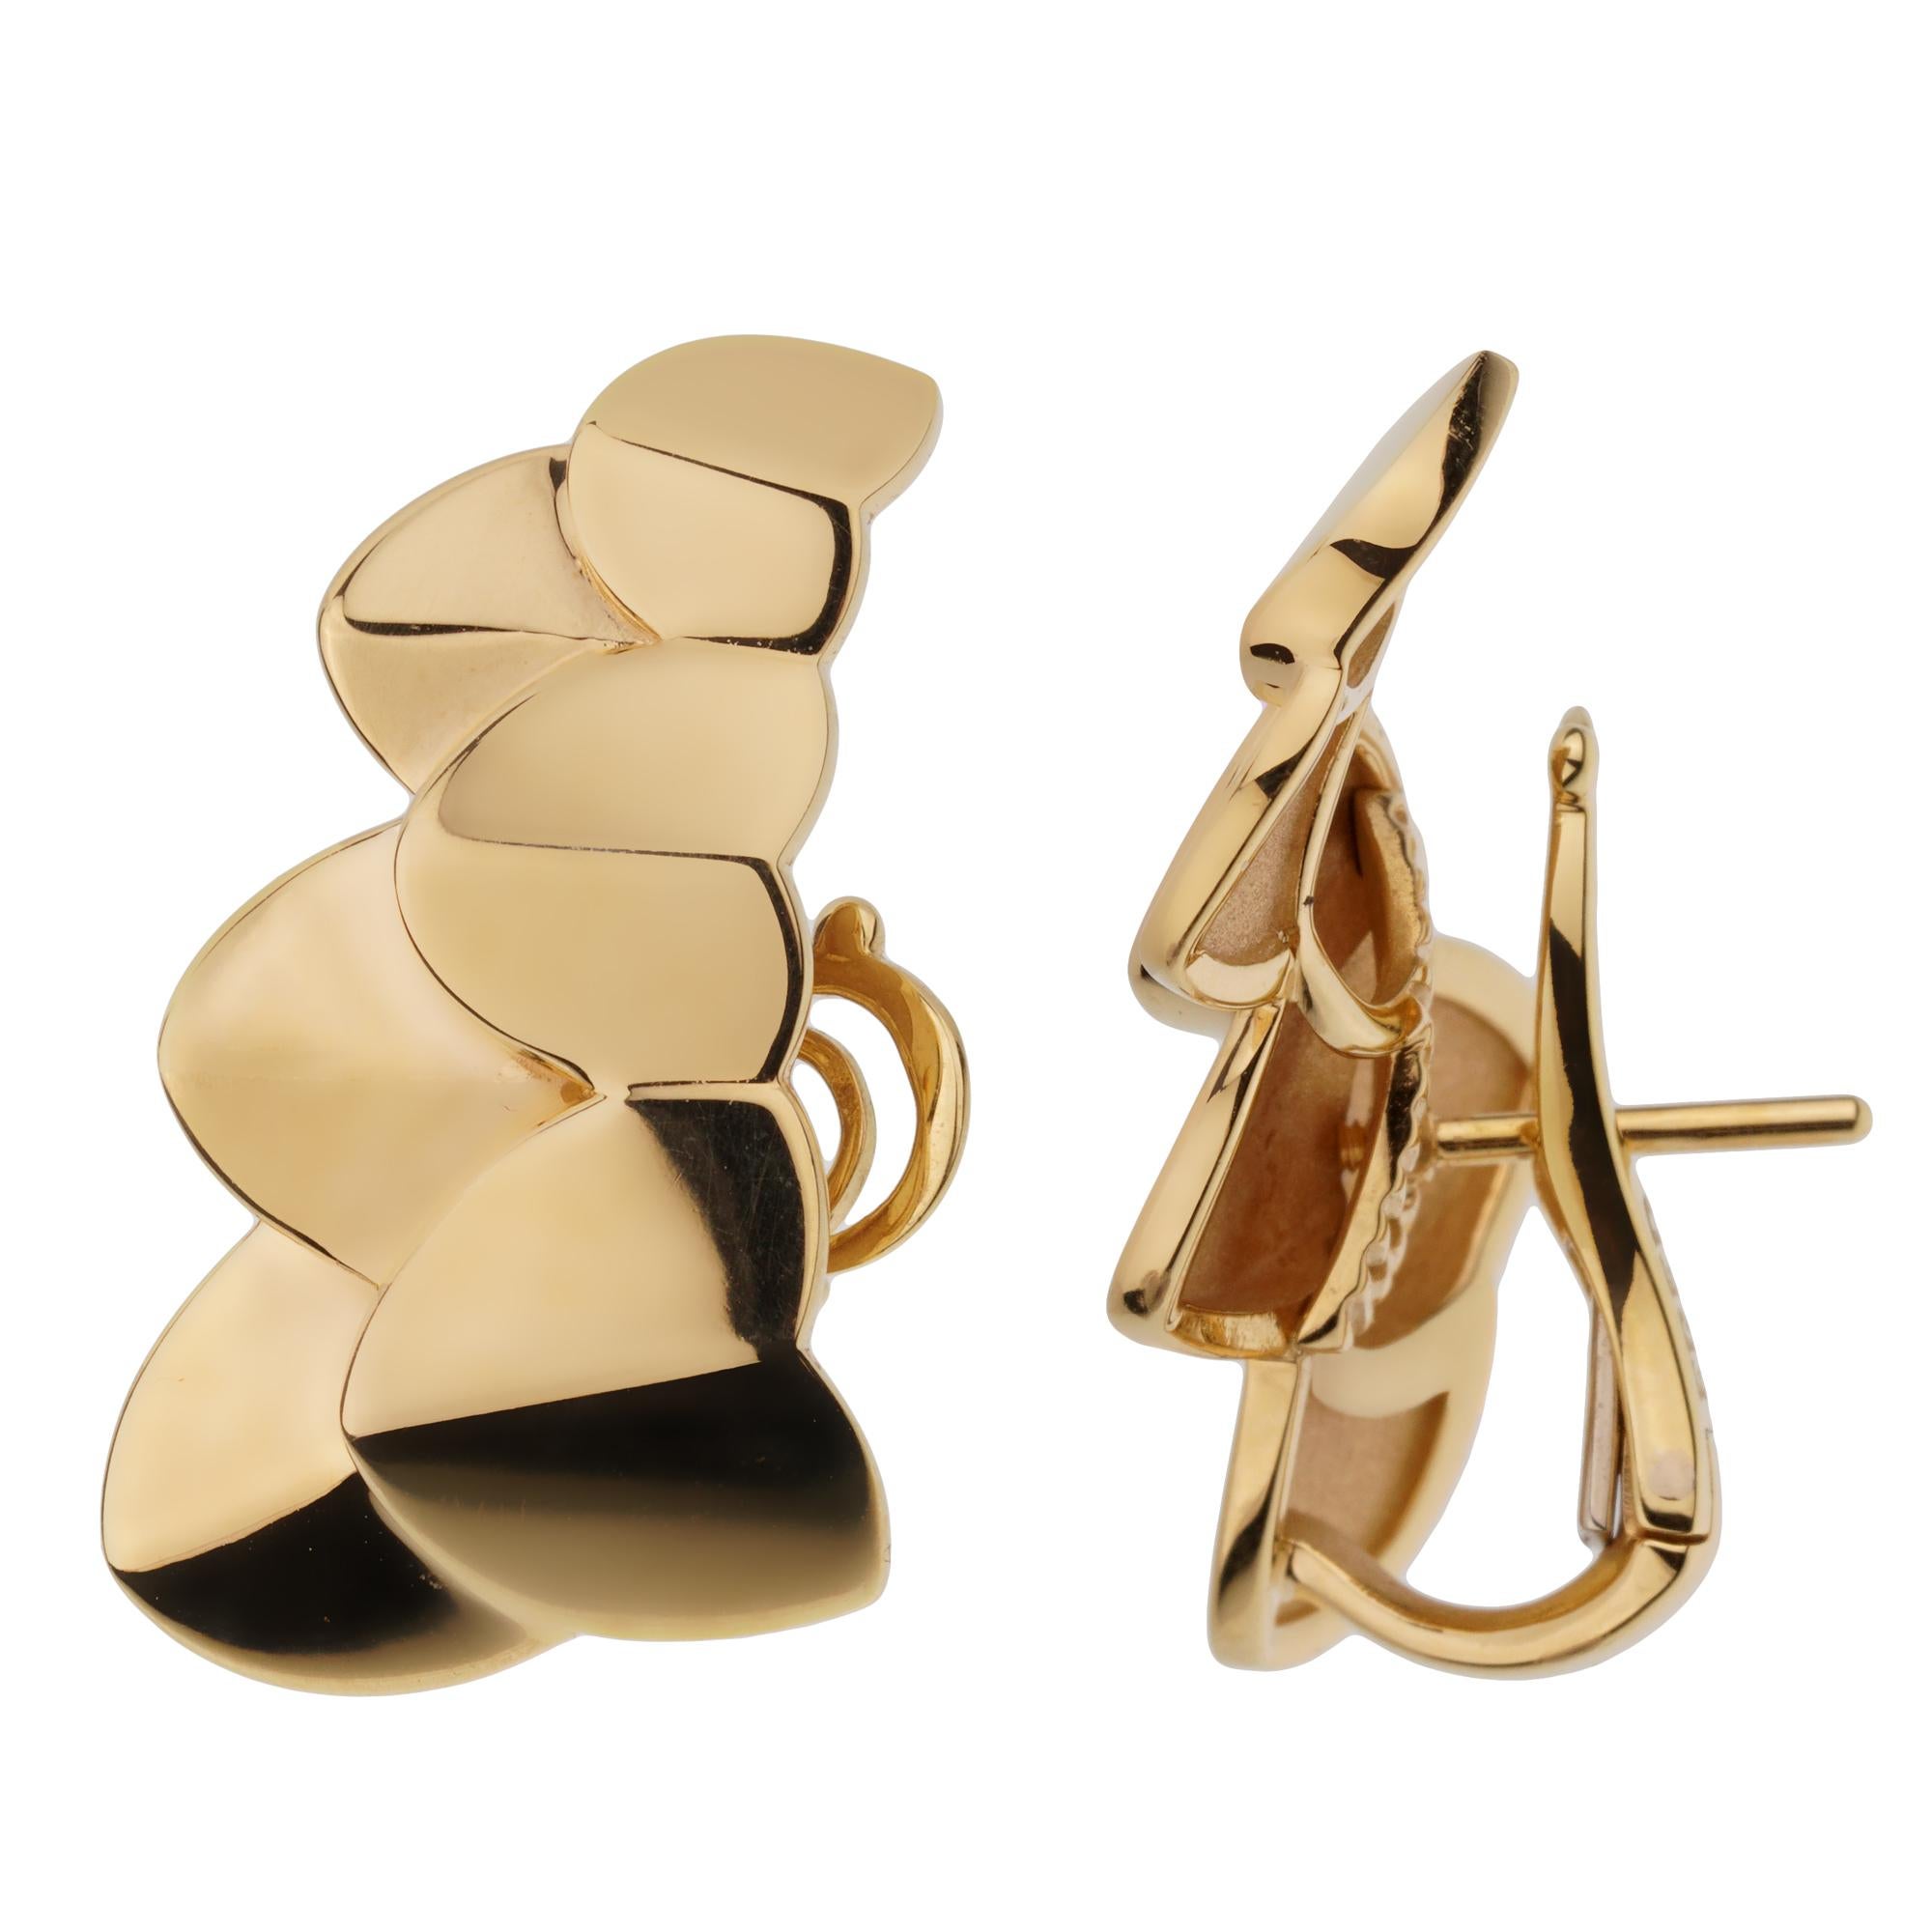 Une fabuleuse paire de boucles d'oreilles Fred of Paris neuves, présentant un motif à double arc en or jaune 18 carats scintillant. Les boucles d'oreilles ont une longueur de 1,10